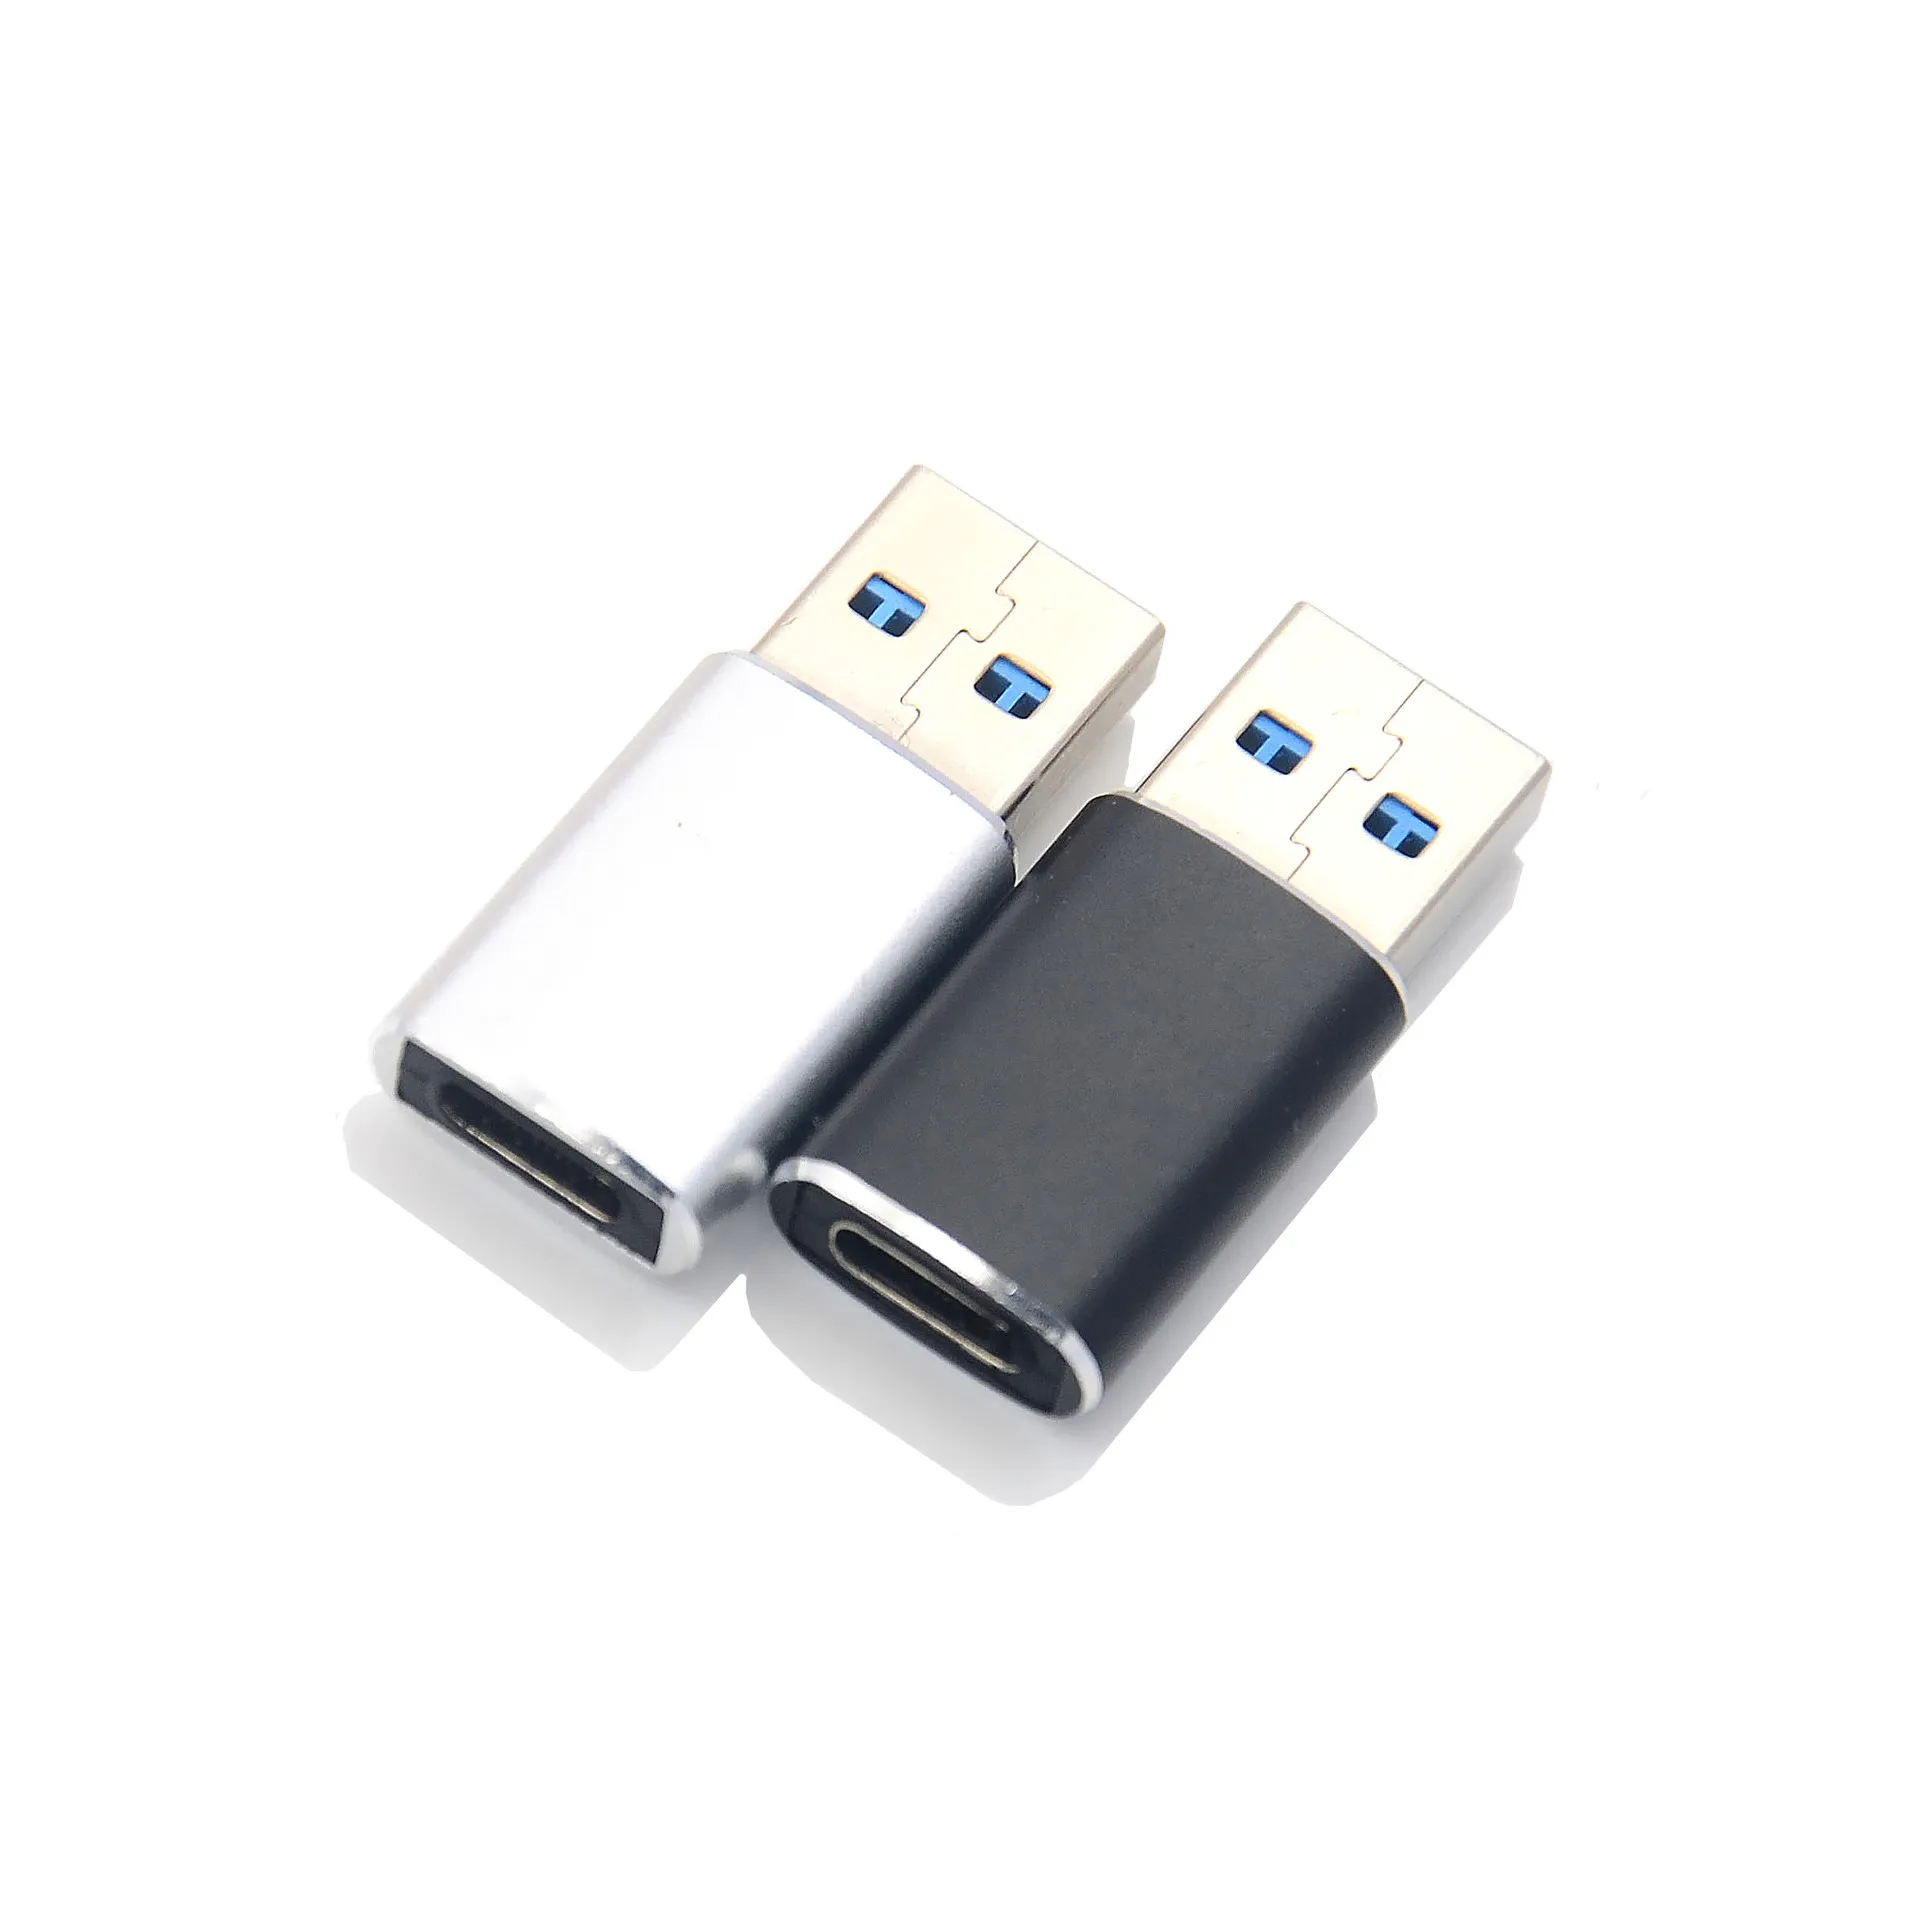 USB C do adapter USB Dopasuj obok siebie Mężczyzna C do USB C 3.0 Adapter żeński kompatybilny z tabletem telefonicznym i Thunderbolt 4/3 urządzeń Srebrna Czarna